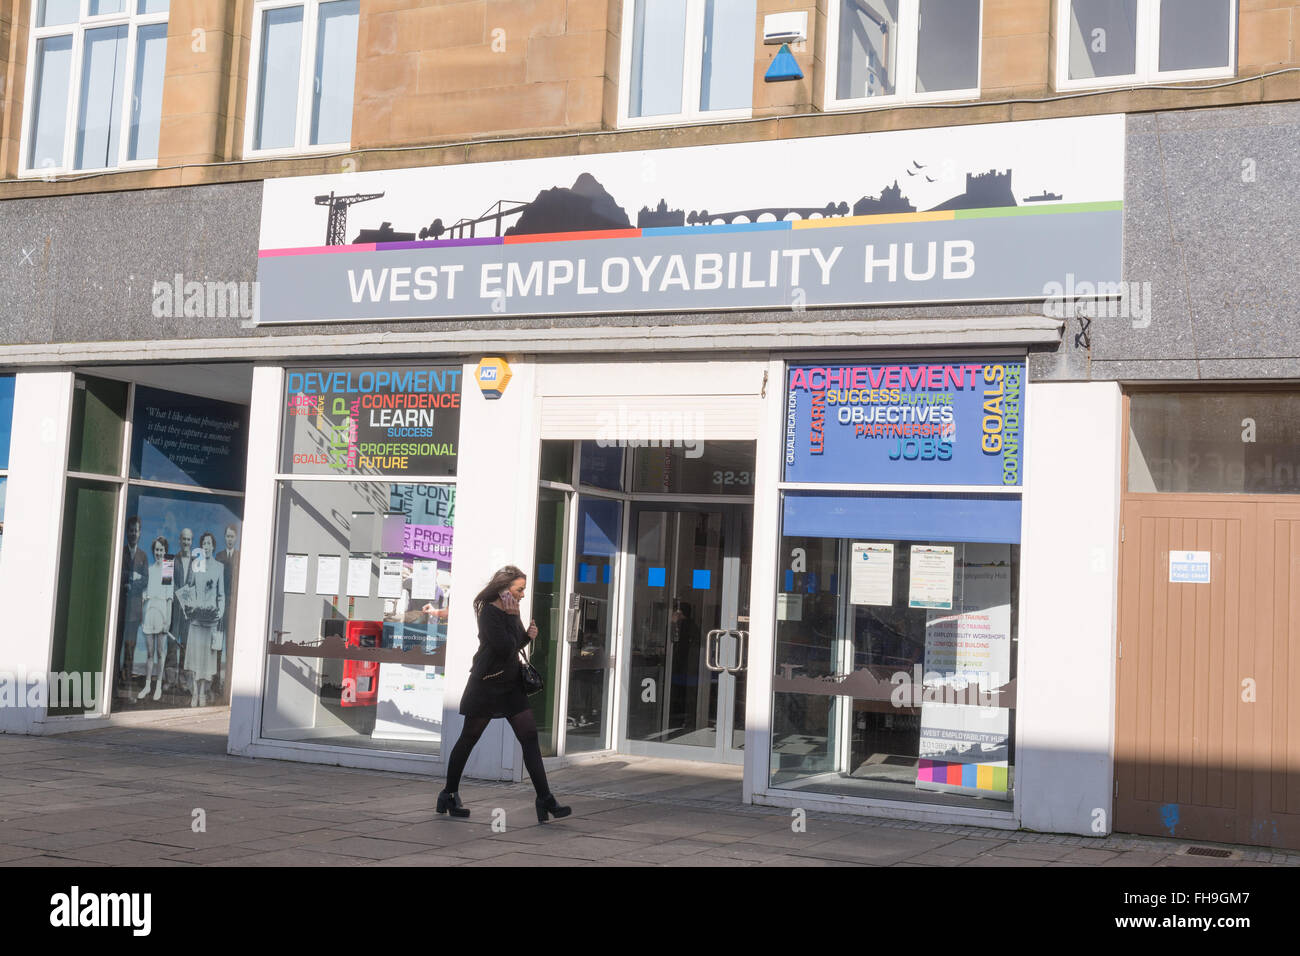 West-Beschäftigungsfähigkeit-Drehscheibe - Jobcenter für Jugendliche - Dumbarton, West Dunbartonshire, Schottland, UK Stockfoto